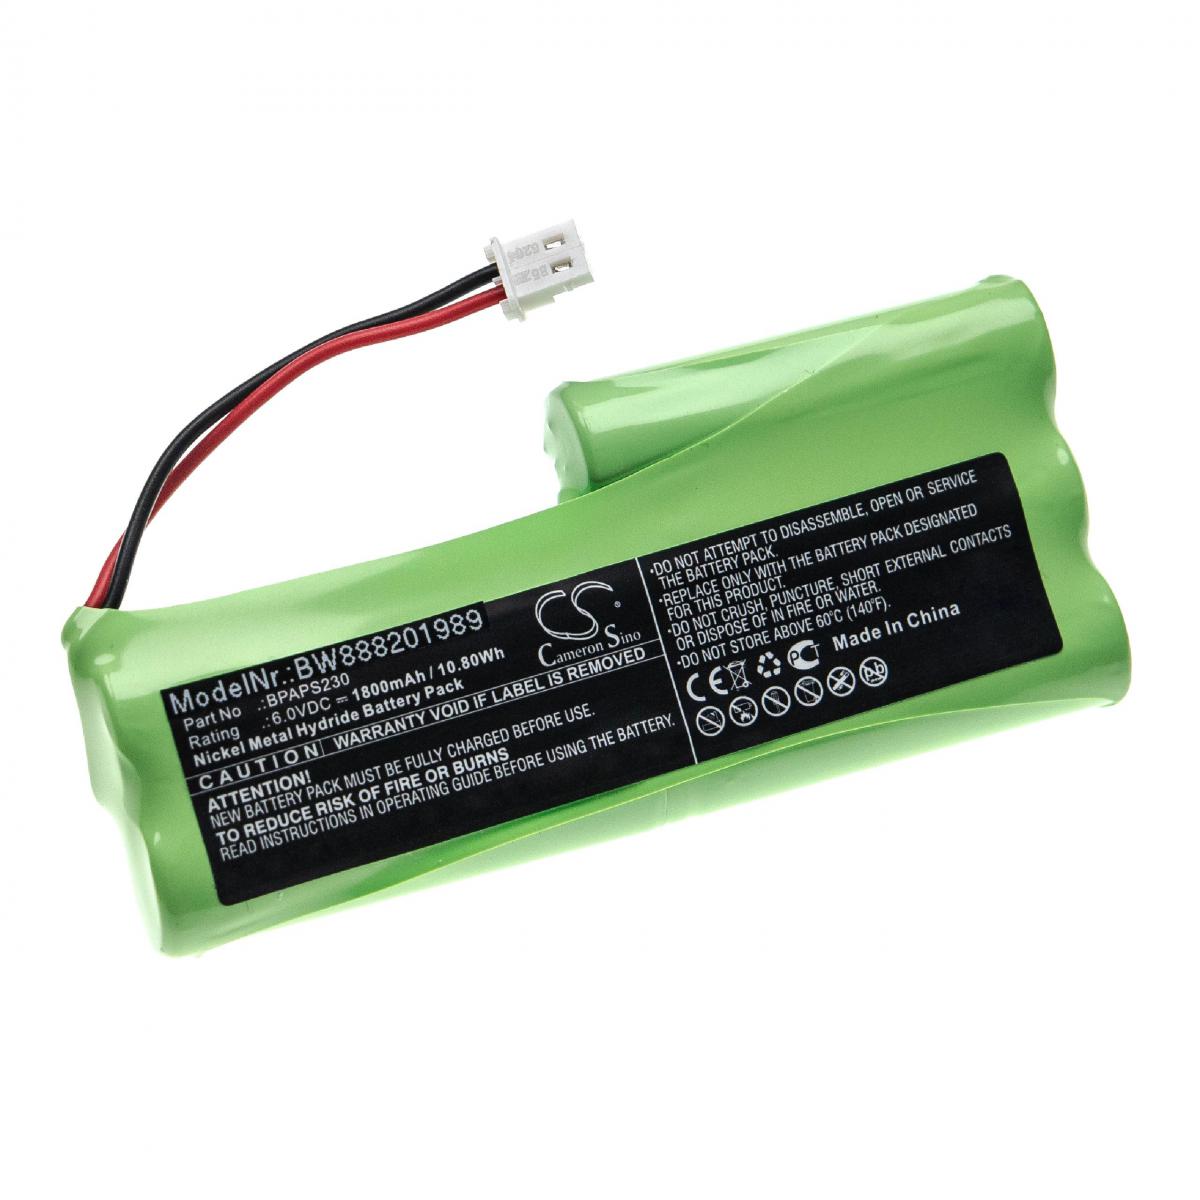 Vhbw - vhbw Batterie compatible avec Velleman APS230 outil de mesure (1800mAh, 6V, NiMH) - Piles rechargeables